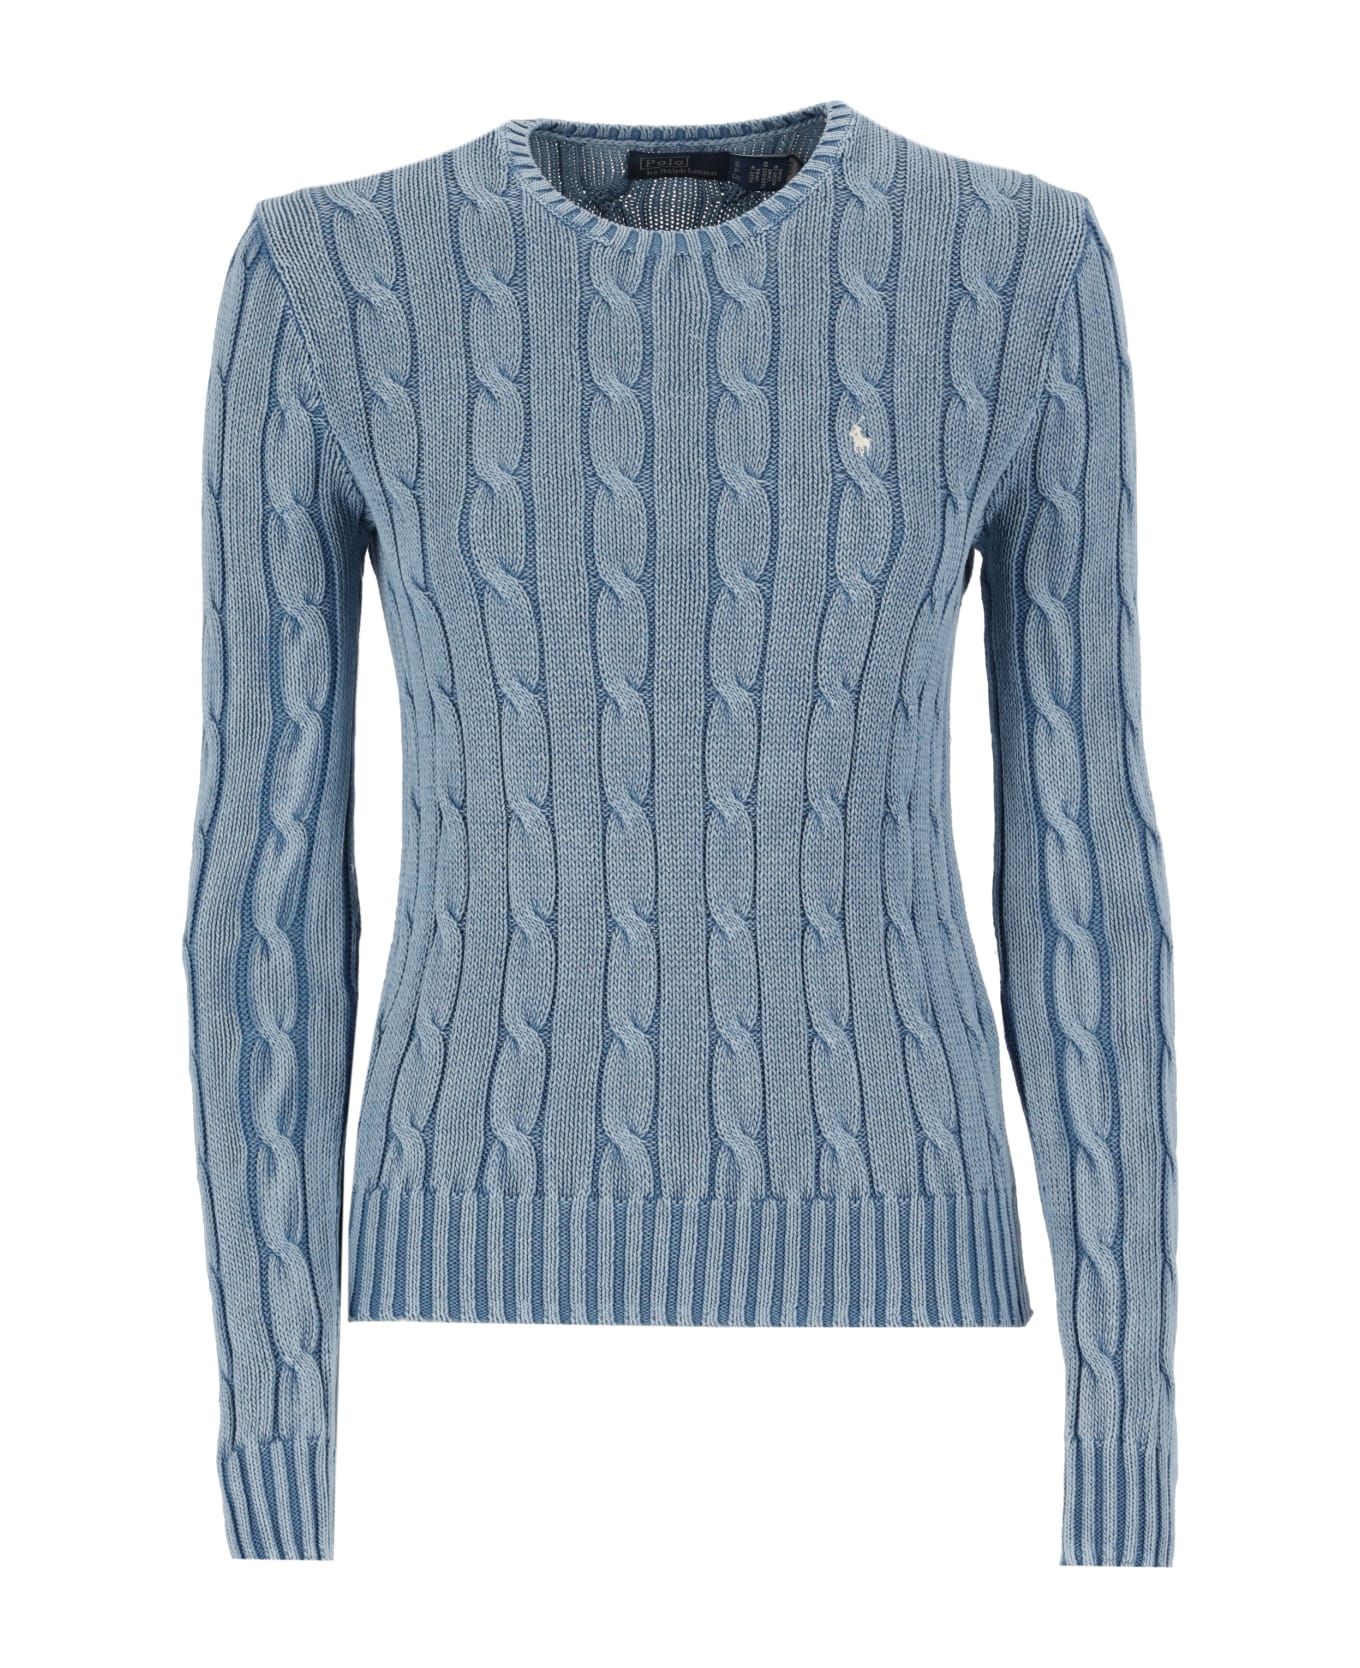 Polo Ralph Lauren Cotton Sweater - Light Blue